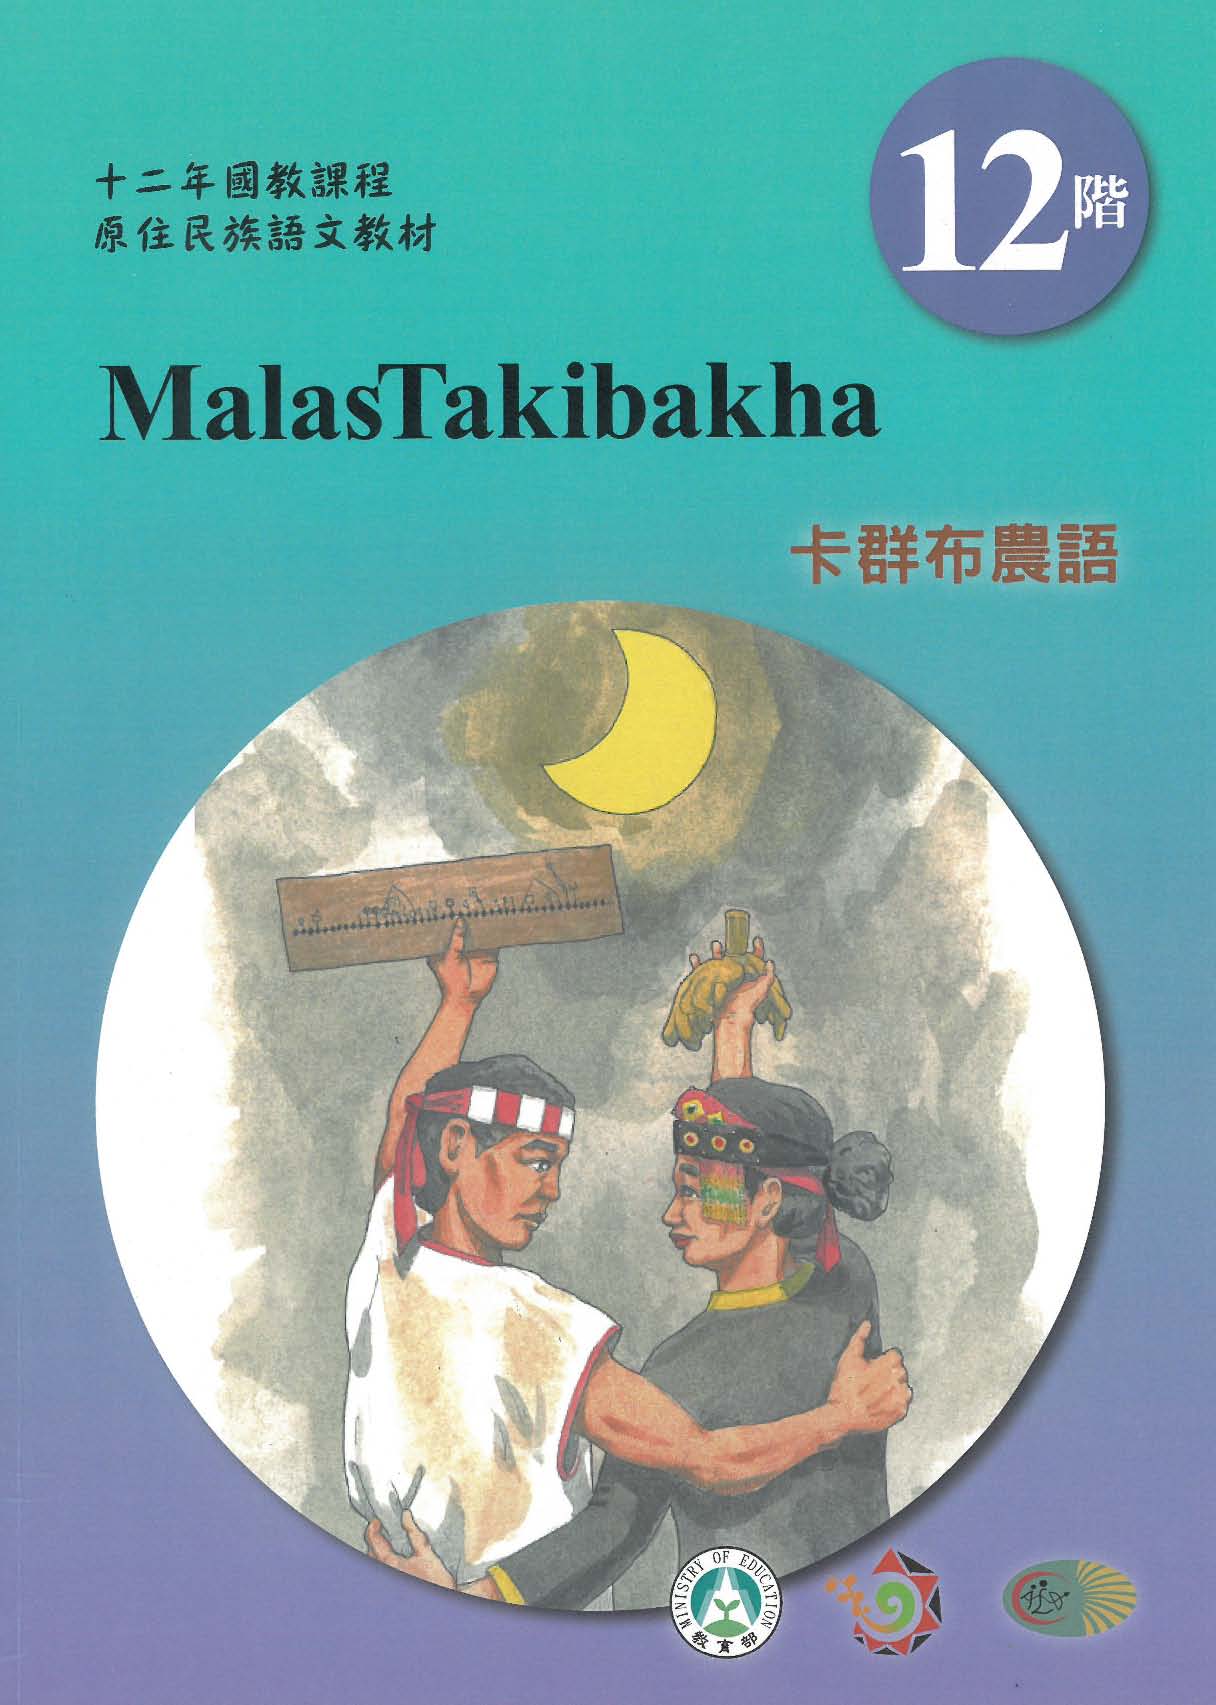 十二年國教原住民族語文教材 卡群布農語 學習手冊 第12階